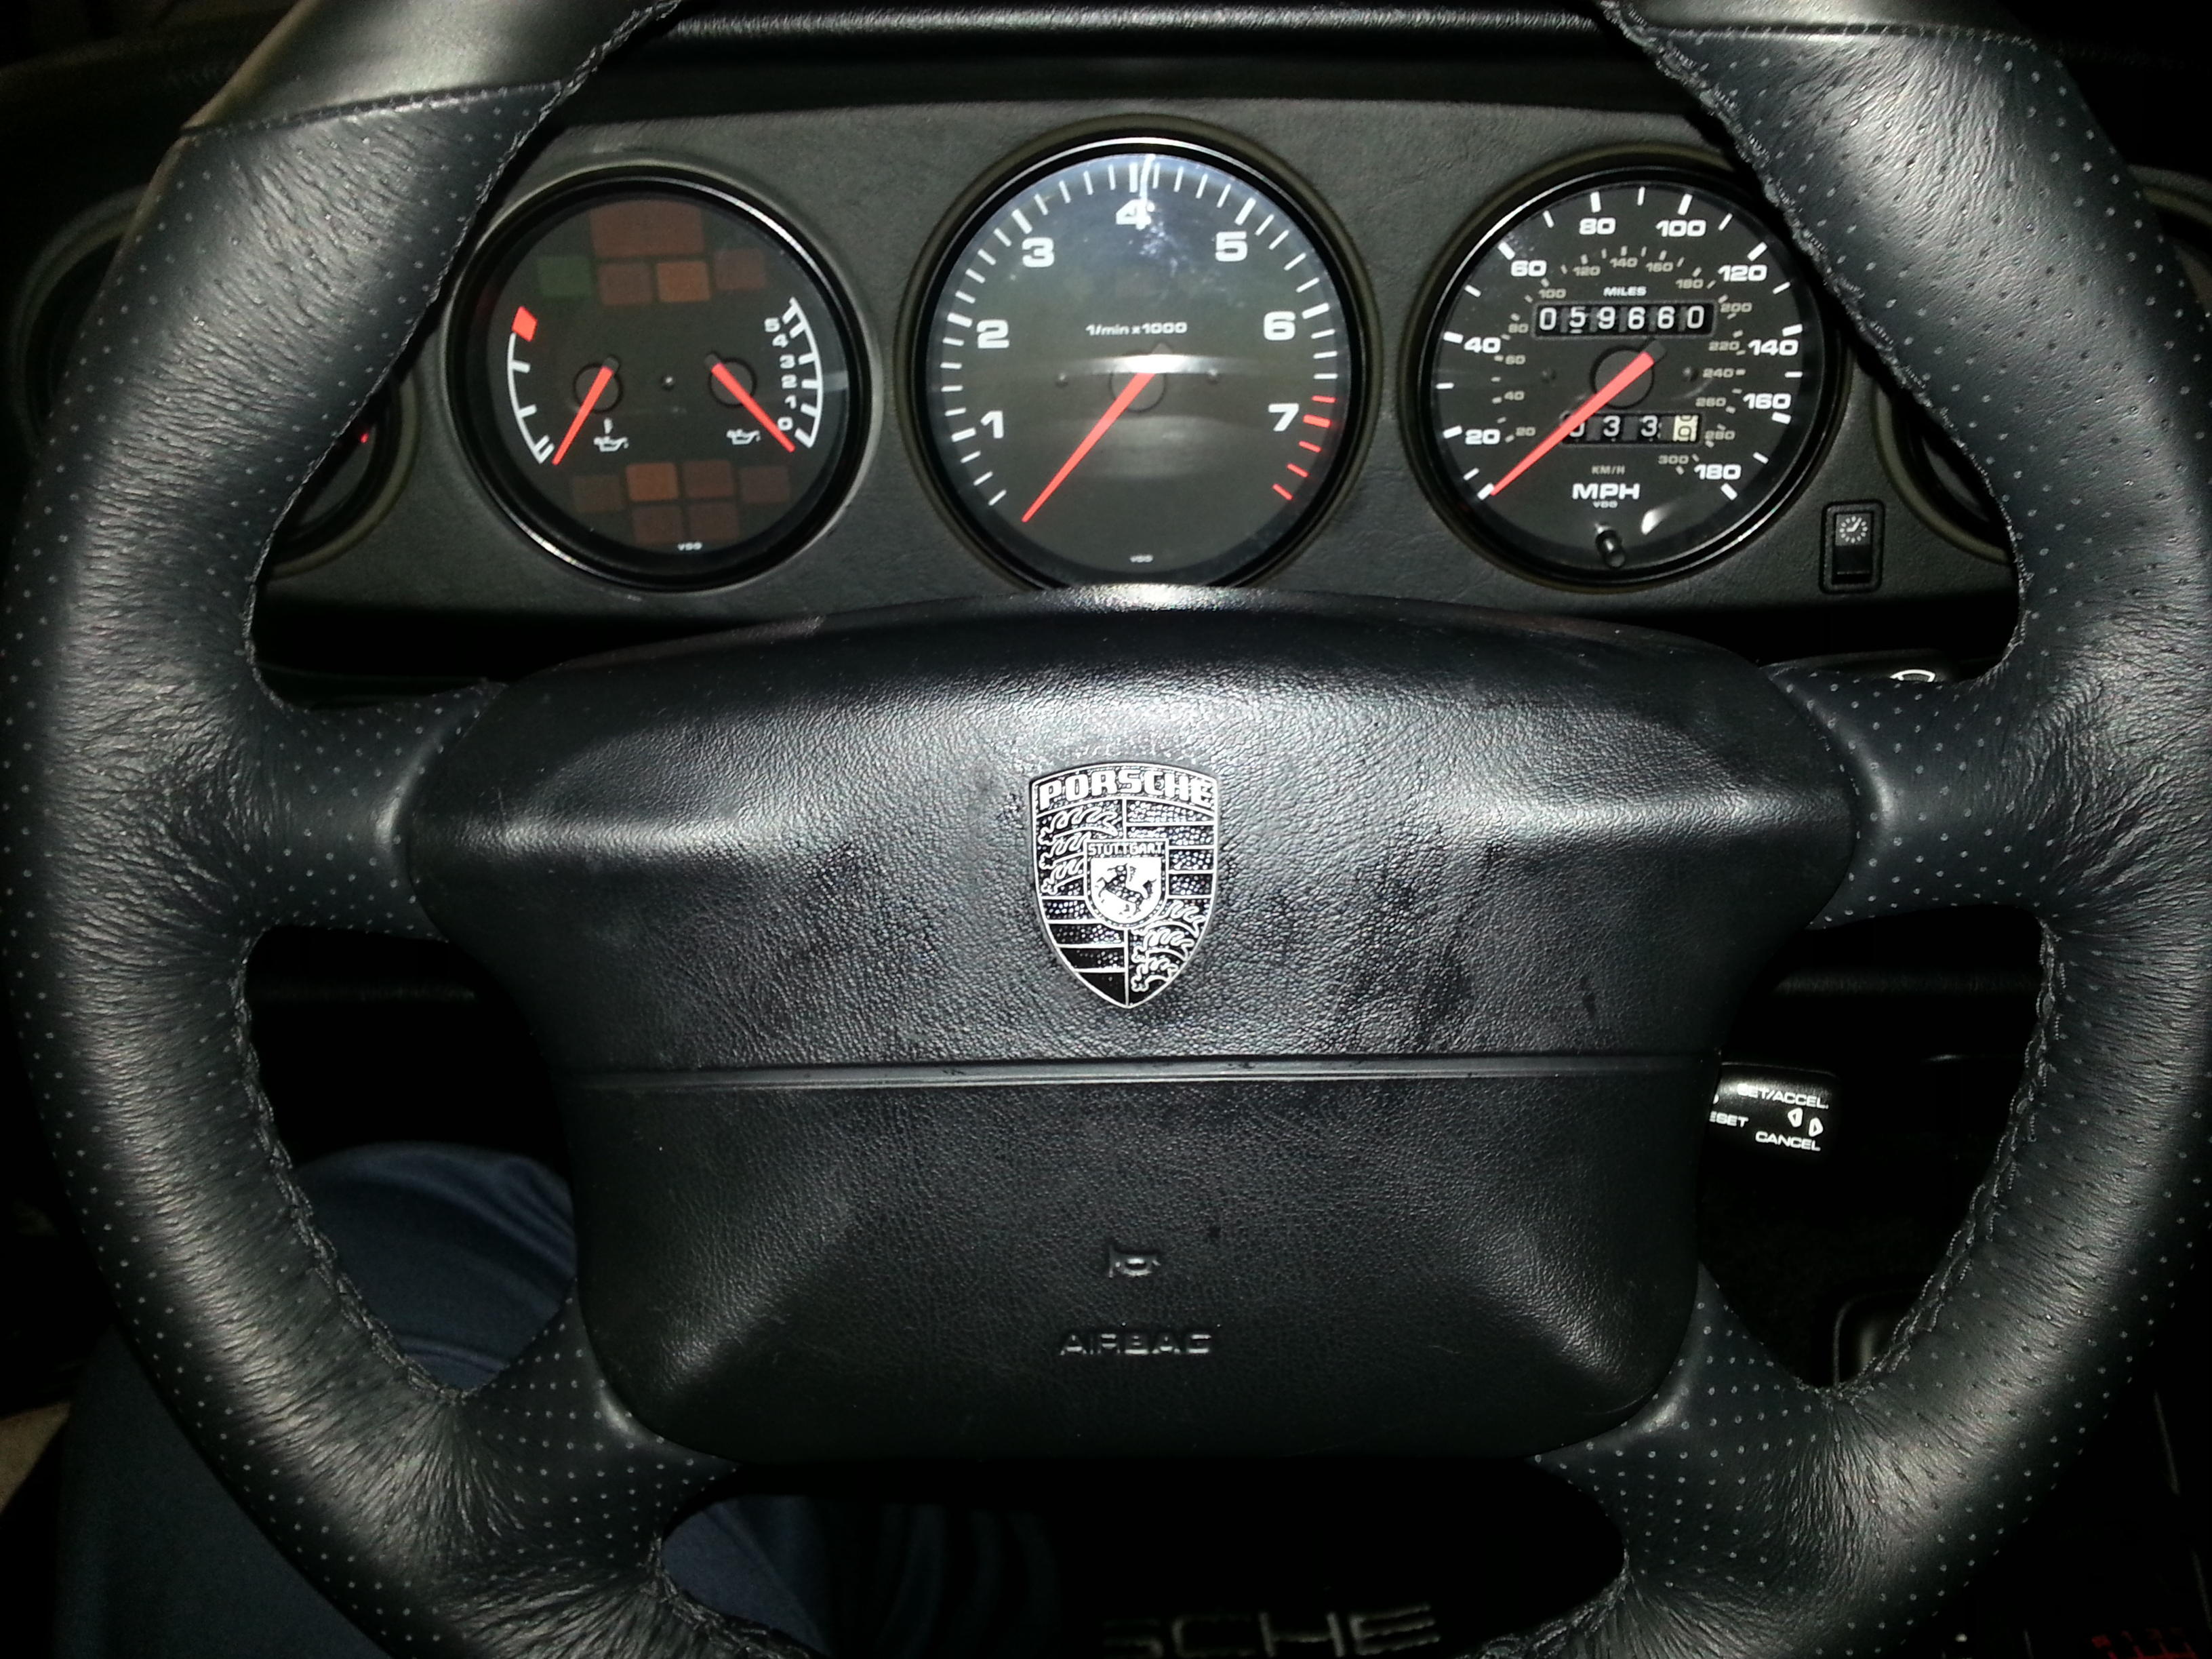 new steering wheel crest - Rennlist - Porsche Discussion Forums